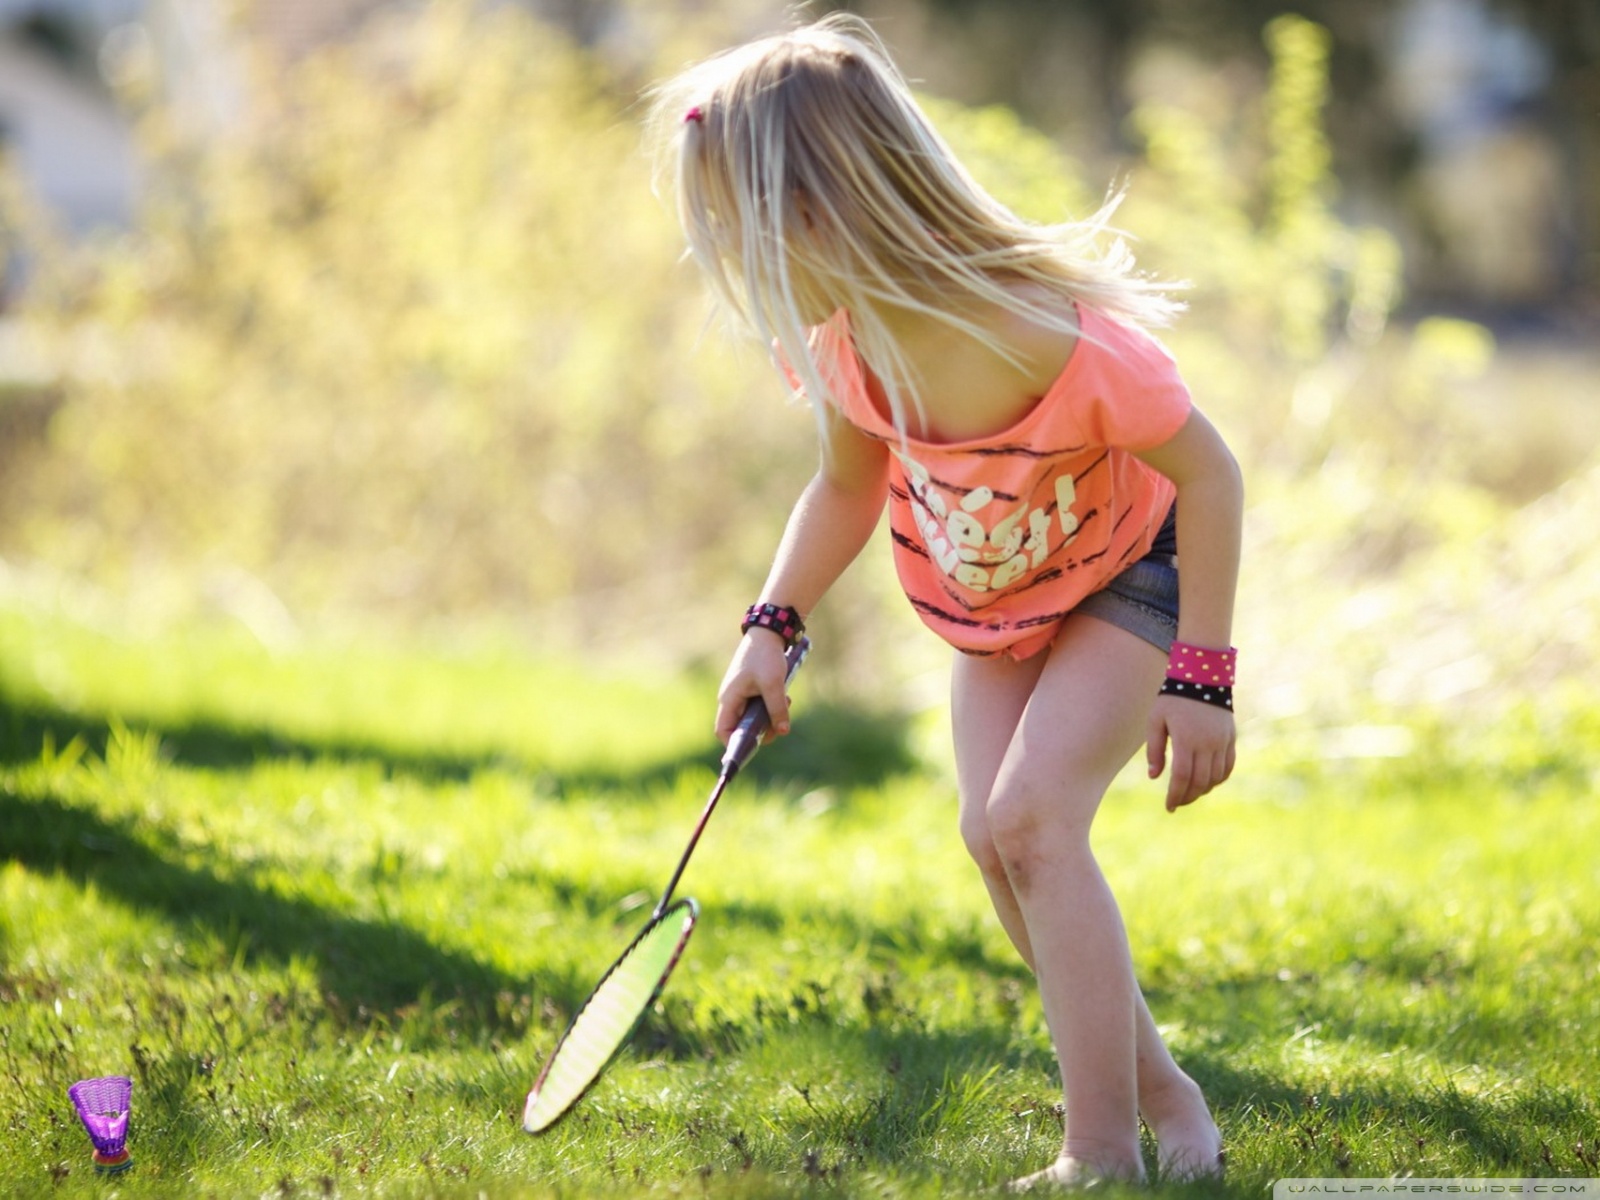 sport girl wallpaper,grass,play,child,fun,recreation